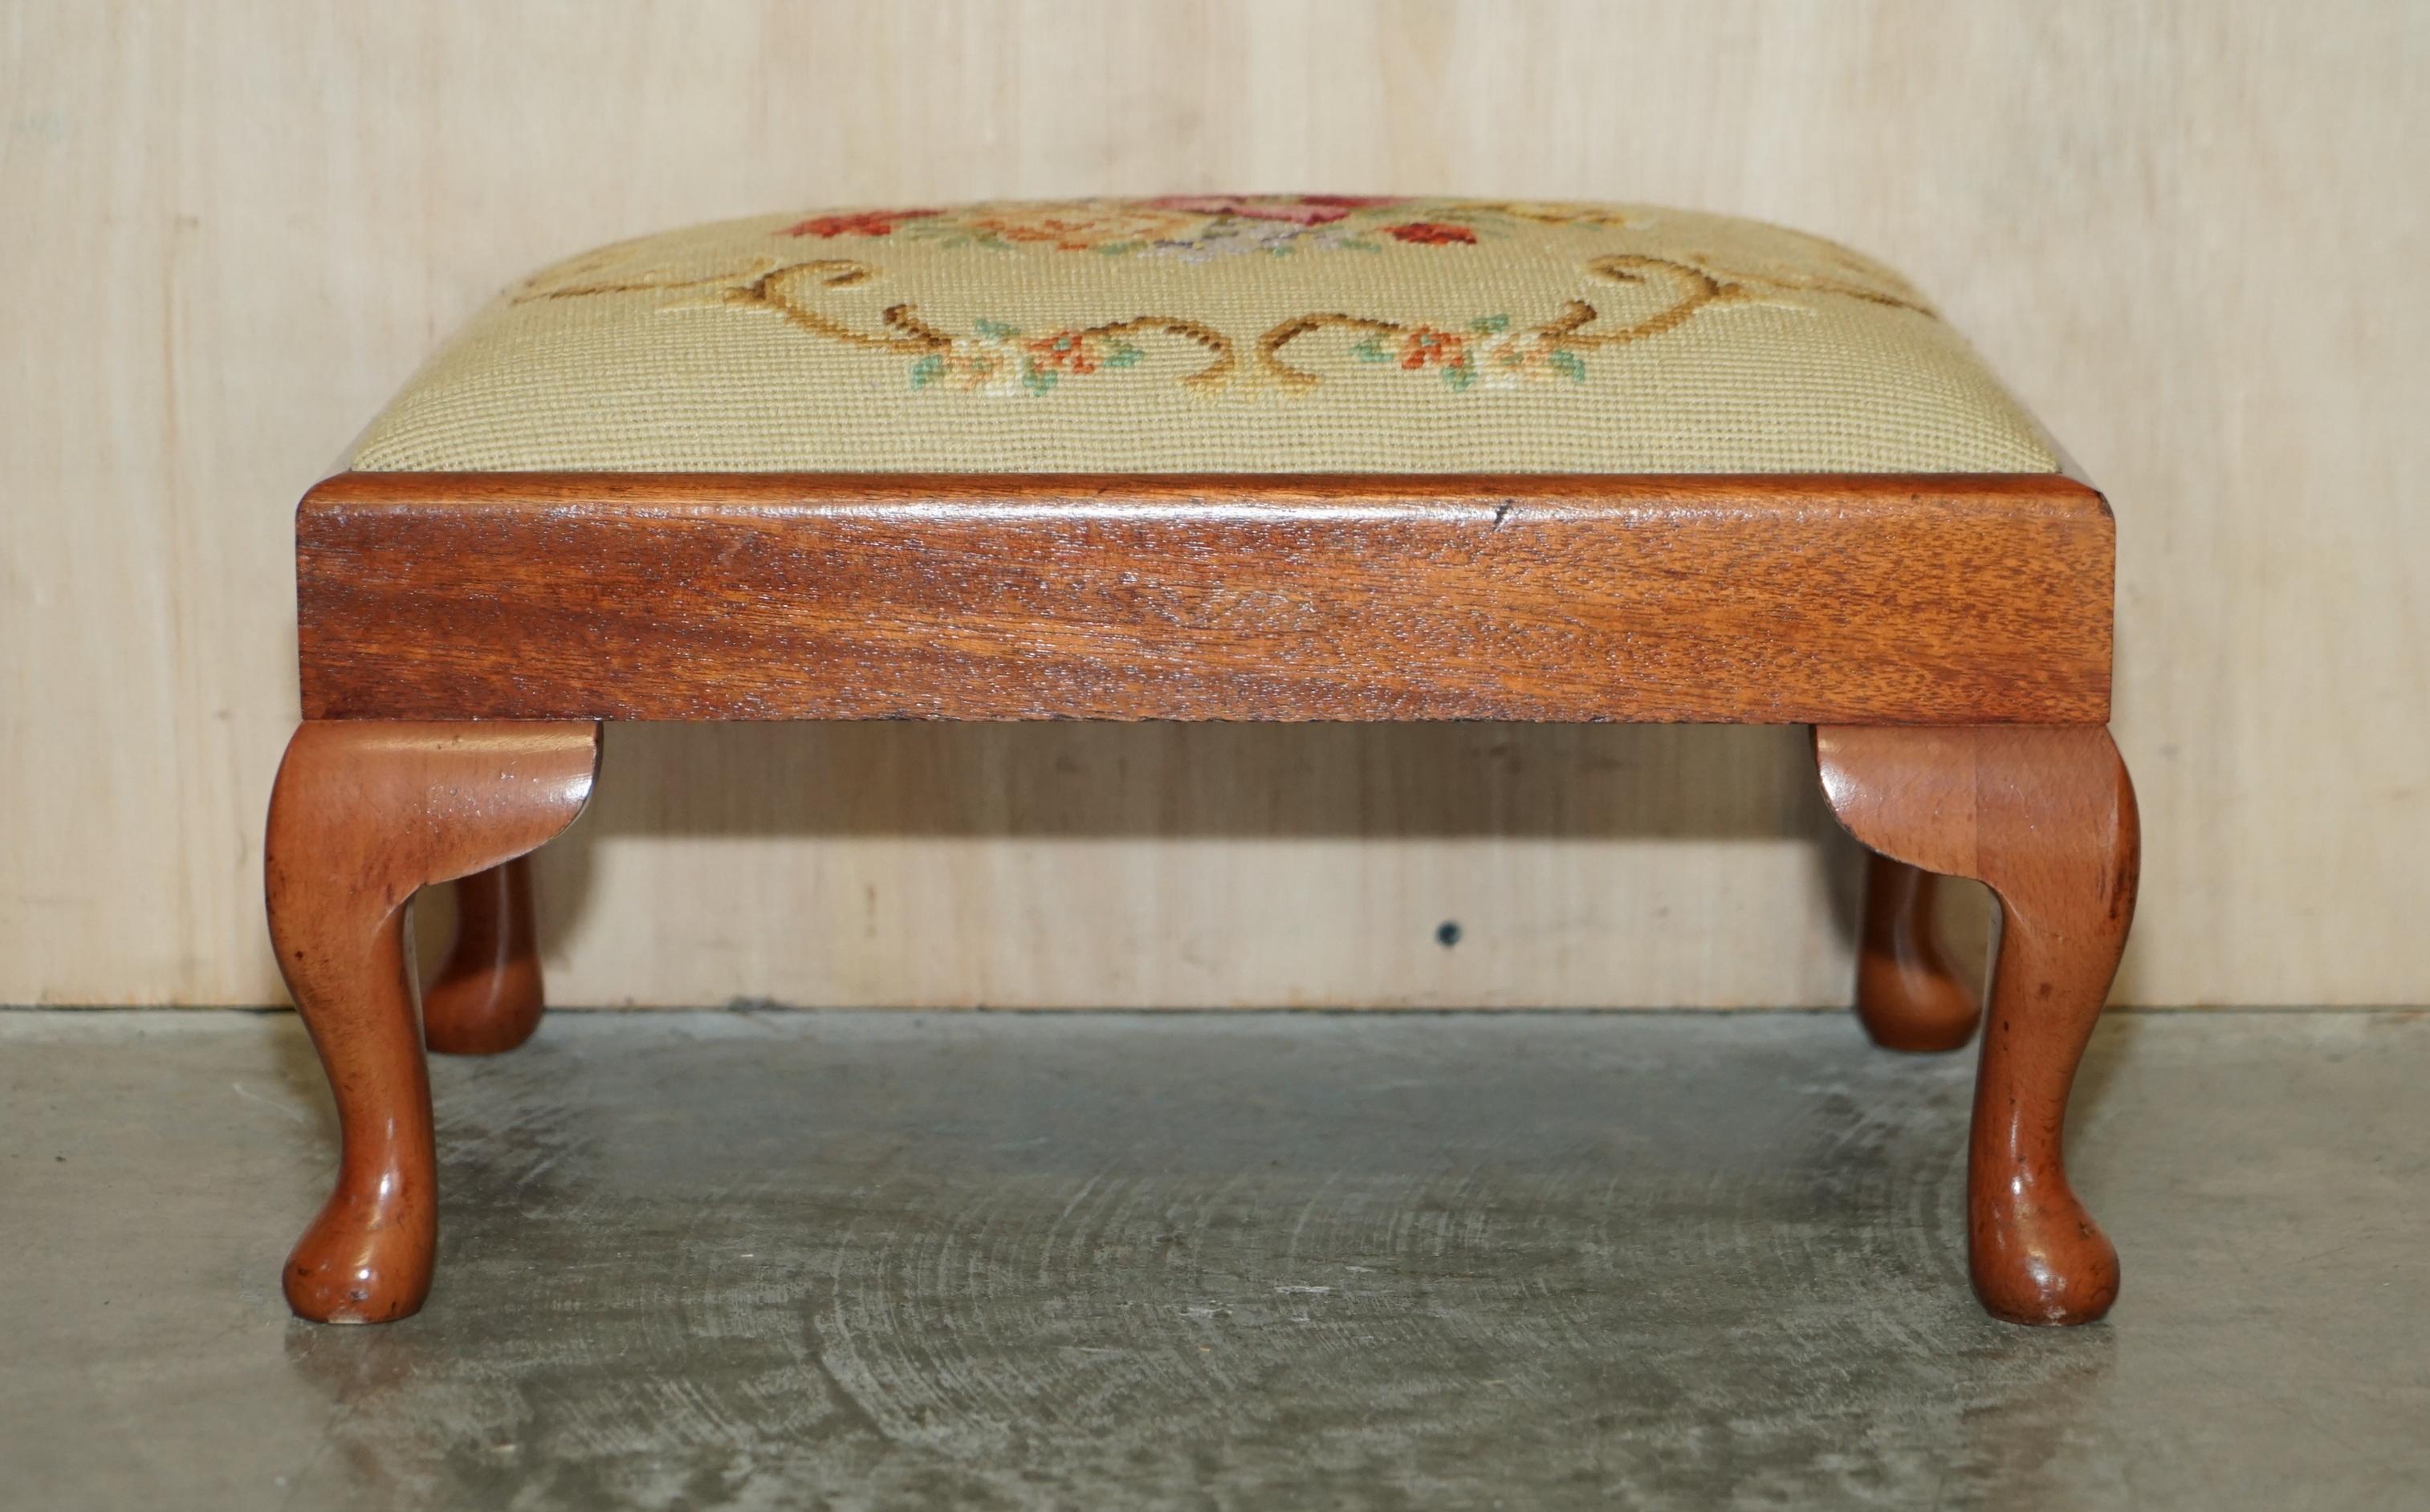 Wir freuen uns, diesen schönen originalen viktorianischen um 1880 handgeschnitzten Nussbaum Cabriolet Fußschemel mit floral bestickter Polsterung zum Verkauf anzubieten 

Ein sehr dekoratives und gut gemachtes Stück, das Oberteil hat eine